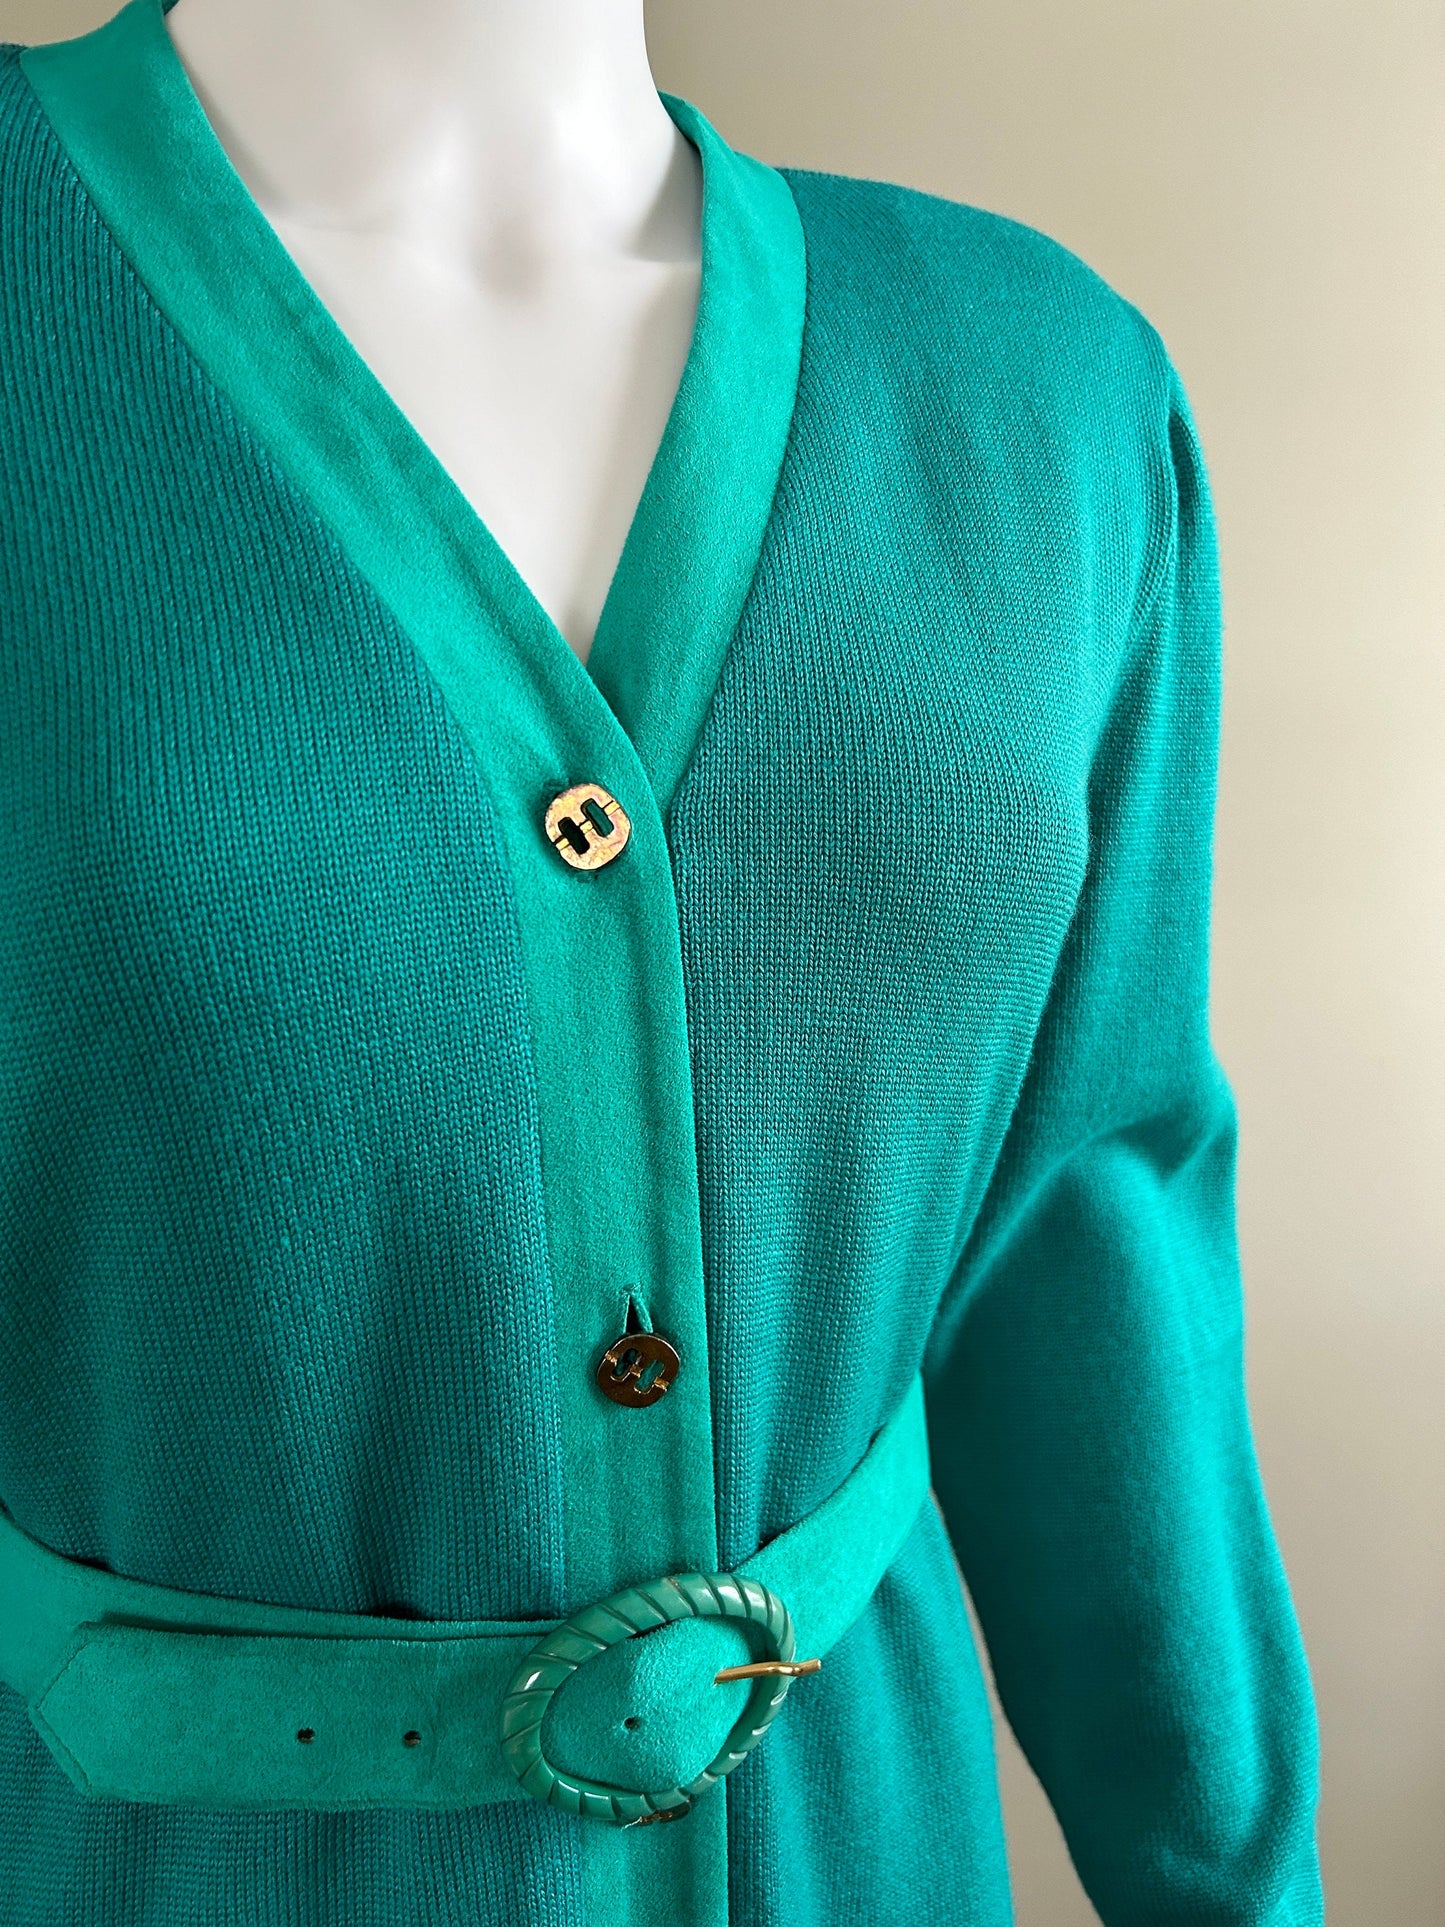 Vintage 1980s Lilli Ann Sweater Dress / 80s Aquamarine Dress / Size S M